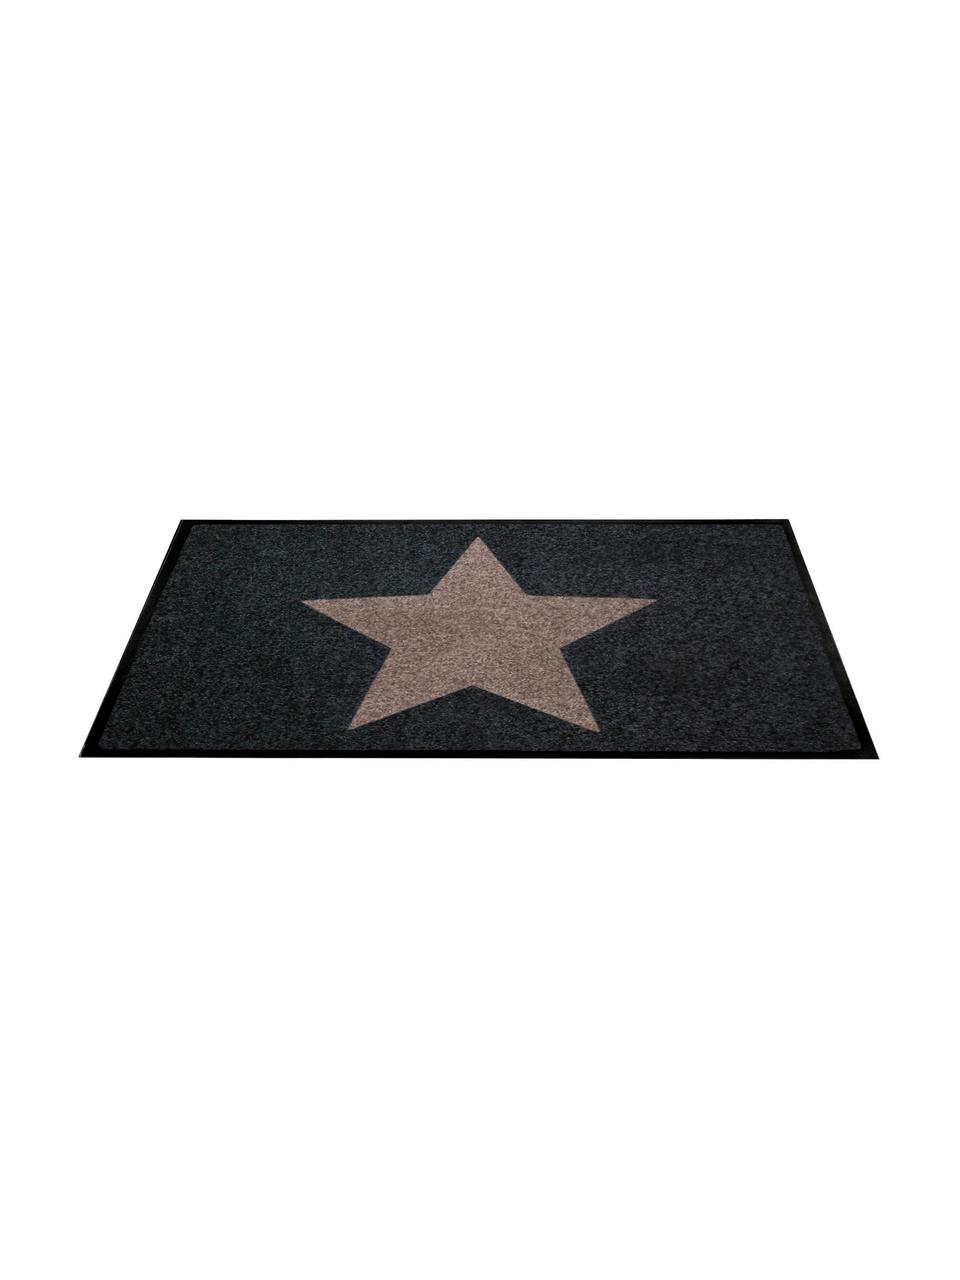 Fussmatte Star, Oberseite: 100% Polyamid, Unterseite: Gummi, Anthrazit, Taupe, 46 x 76 cm